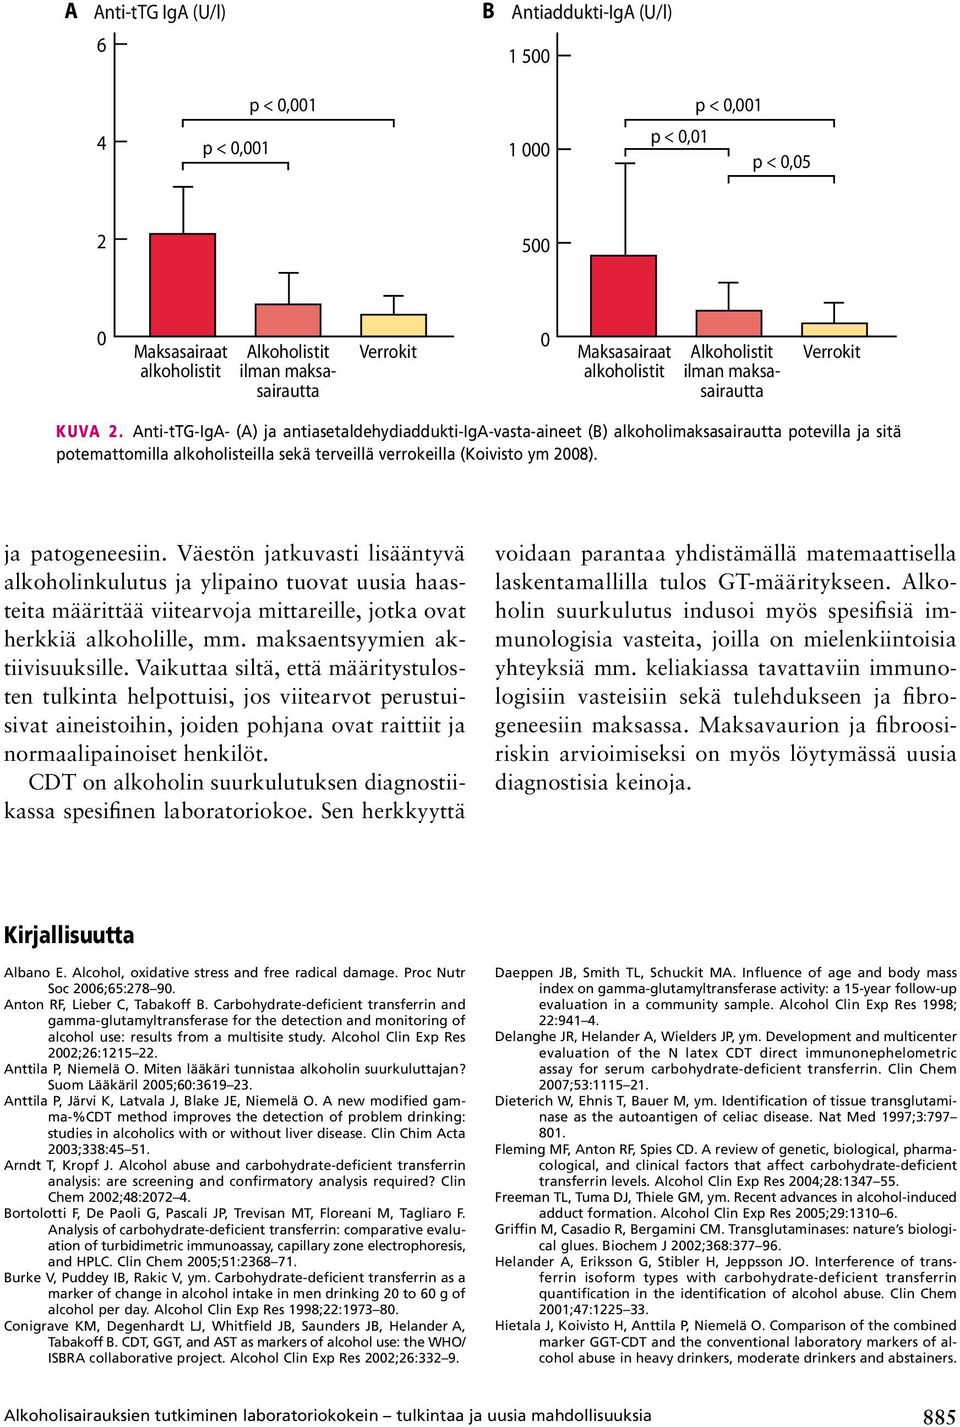 Anti-tTG-IgA- (A) ja antiasetaldehydiaddukti-iga-vasta-aineet (B) alkoholimaksasairautta potevilla ja sitä potemattomilla alkoholisteilla sekä terveillä verrokeilla (Koivisto ym 2008).